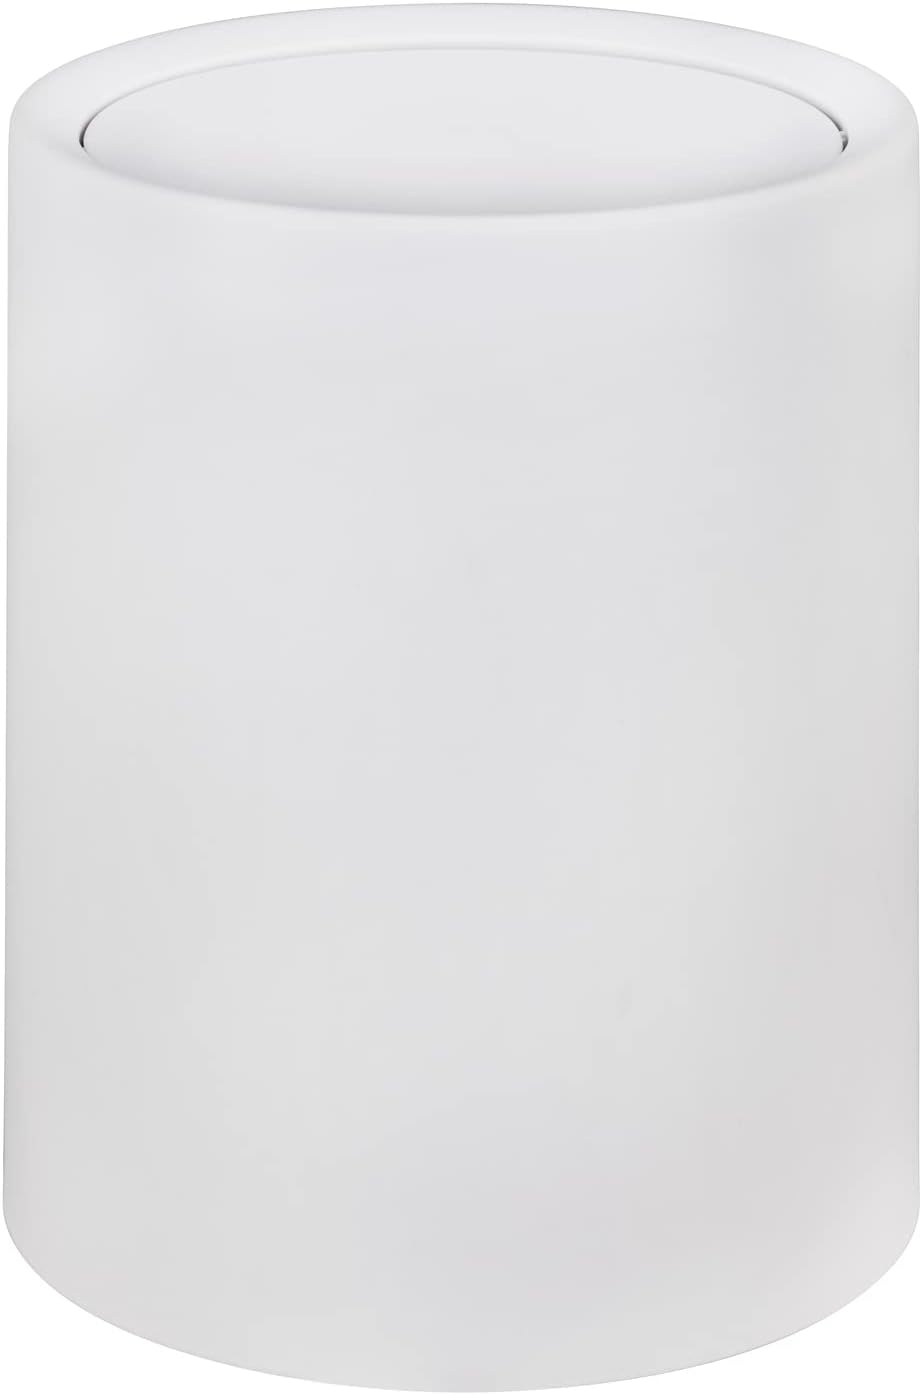 WENKO Schwingdeckeleimer Atri, 6 Liter Kosmetikeimer mit Deckel aus hochwertigem Kunststoff mit Inneneimer, Hülle zum Überstülpen macht Müllbeutel unsichtbar, (B/T x H): 21 x 25,5 cm, Weiß